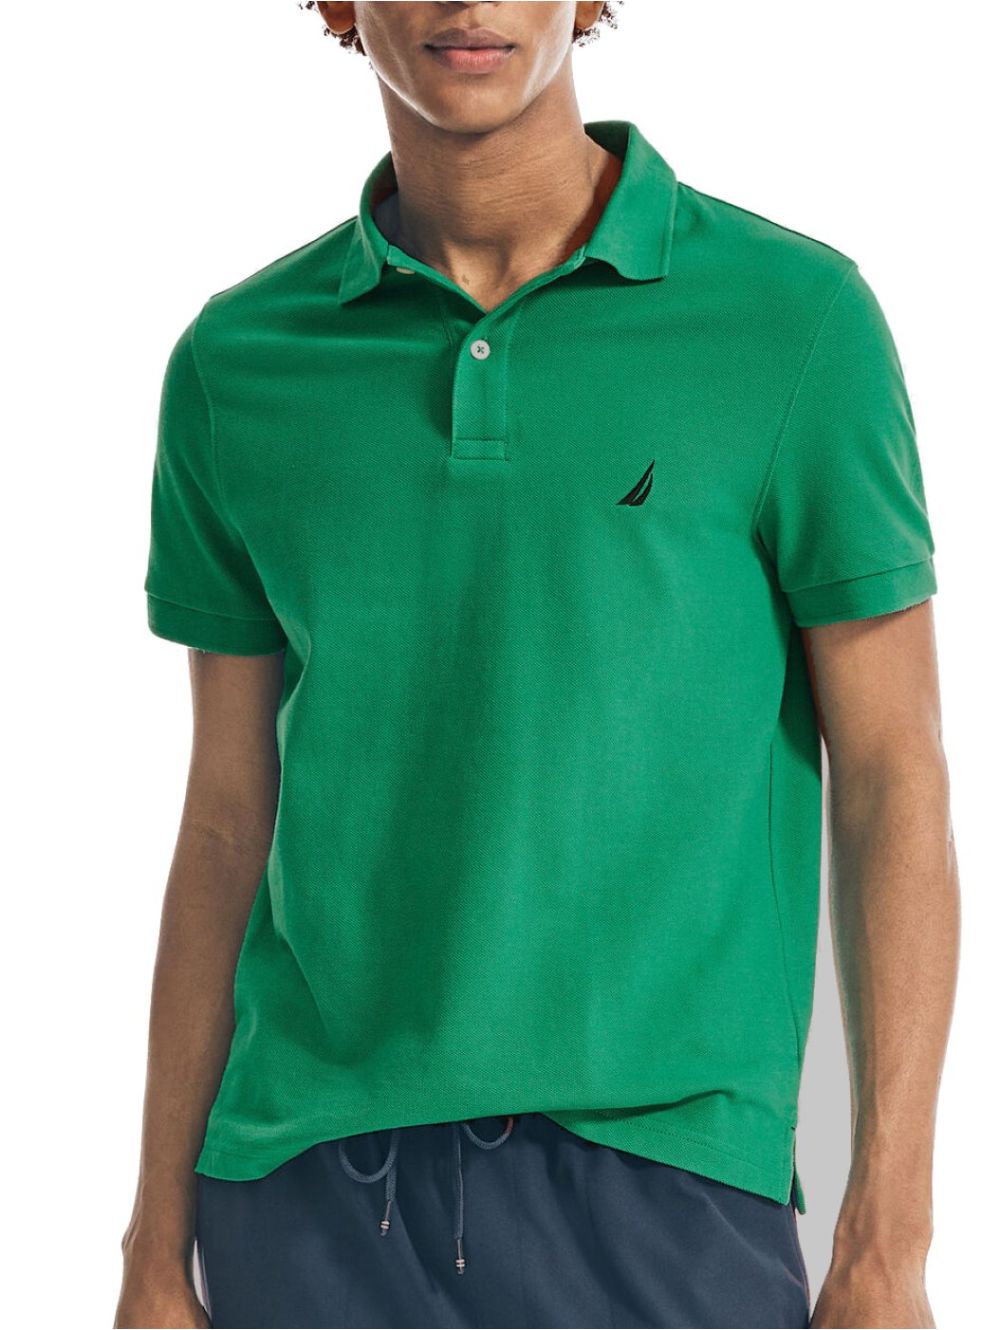 NAUTICA Men's Green Short Sleeve Pique Polo Shirt K17000-3PX 